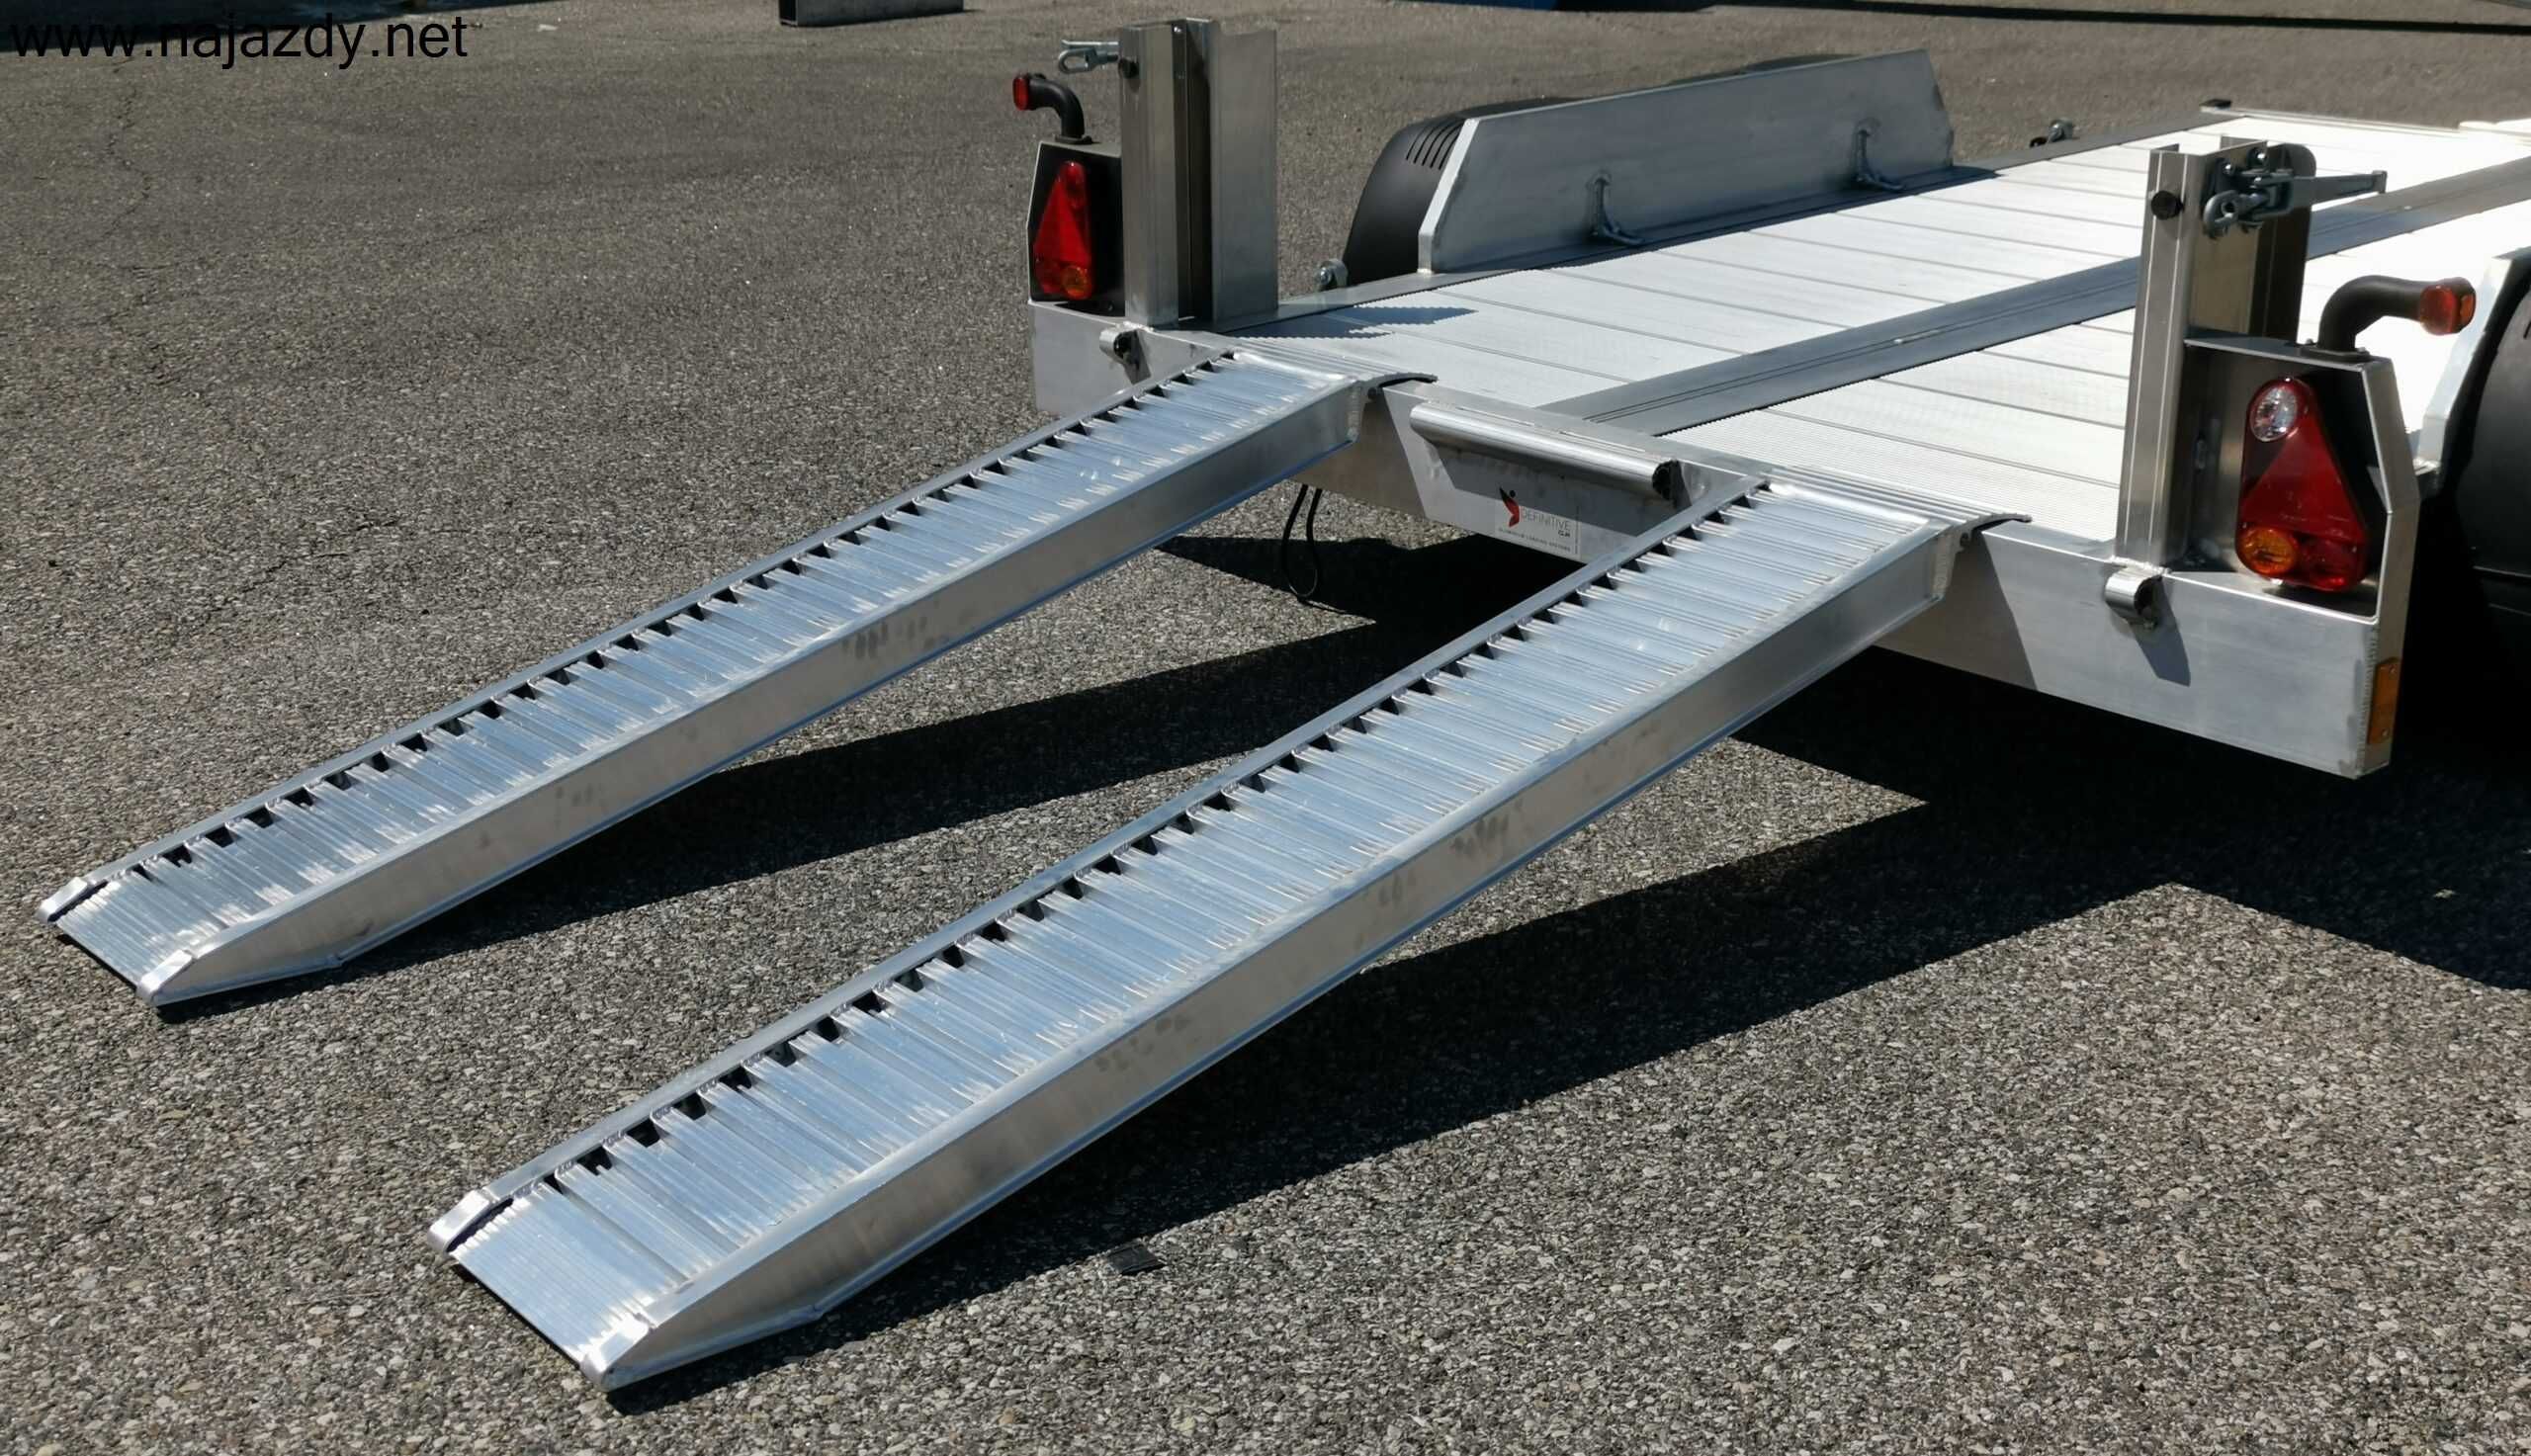 Najazdy Aluminiowe 3,5m 5,5t Cert./Gwarancja/szybka dostawa